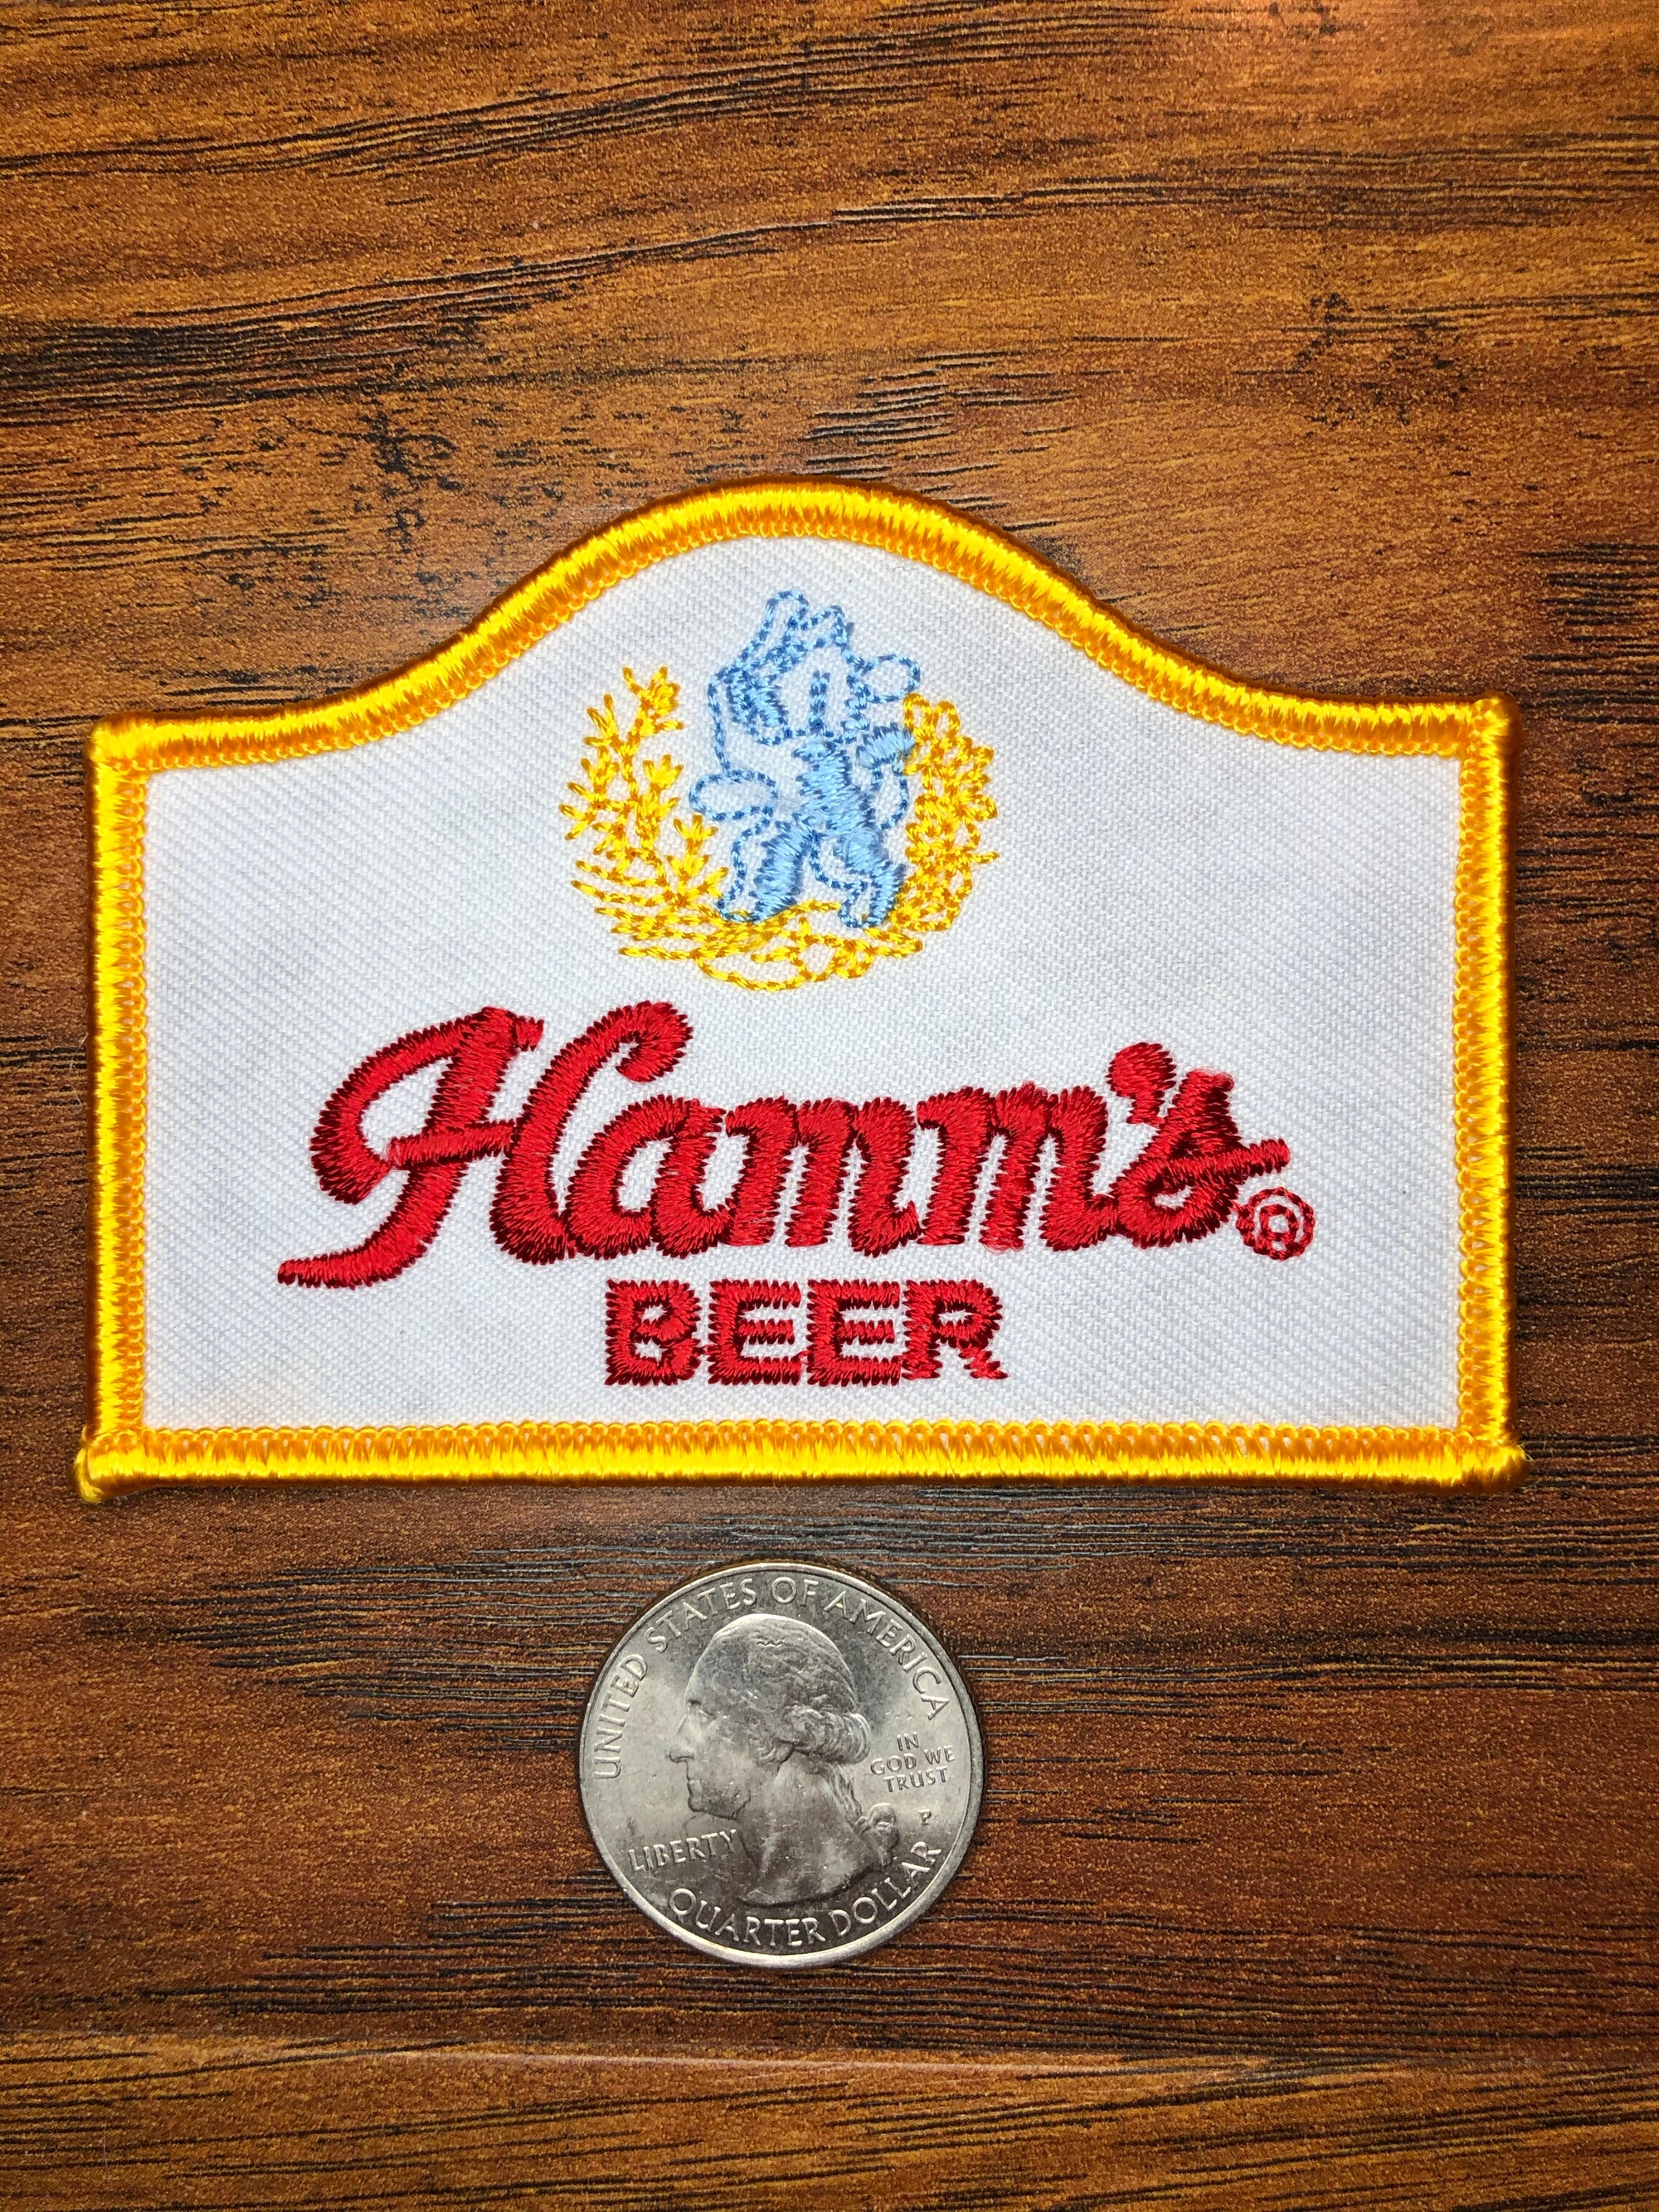 Hamm’s Beer